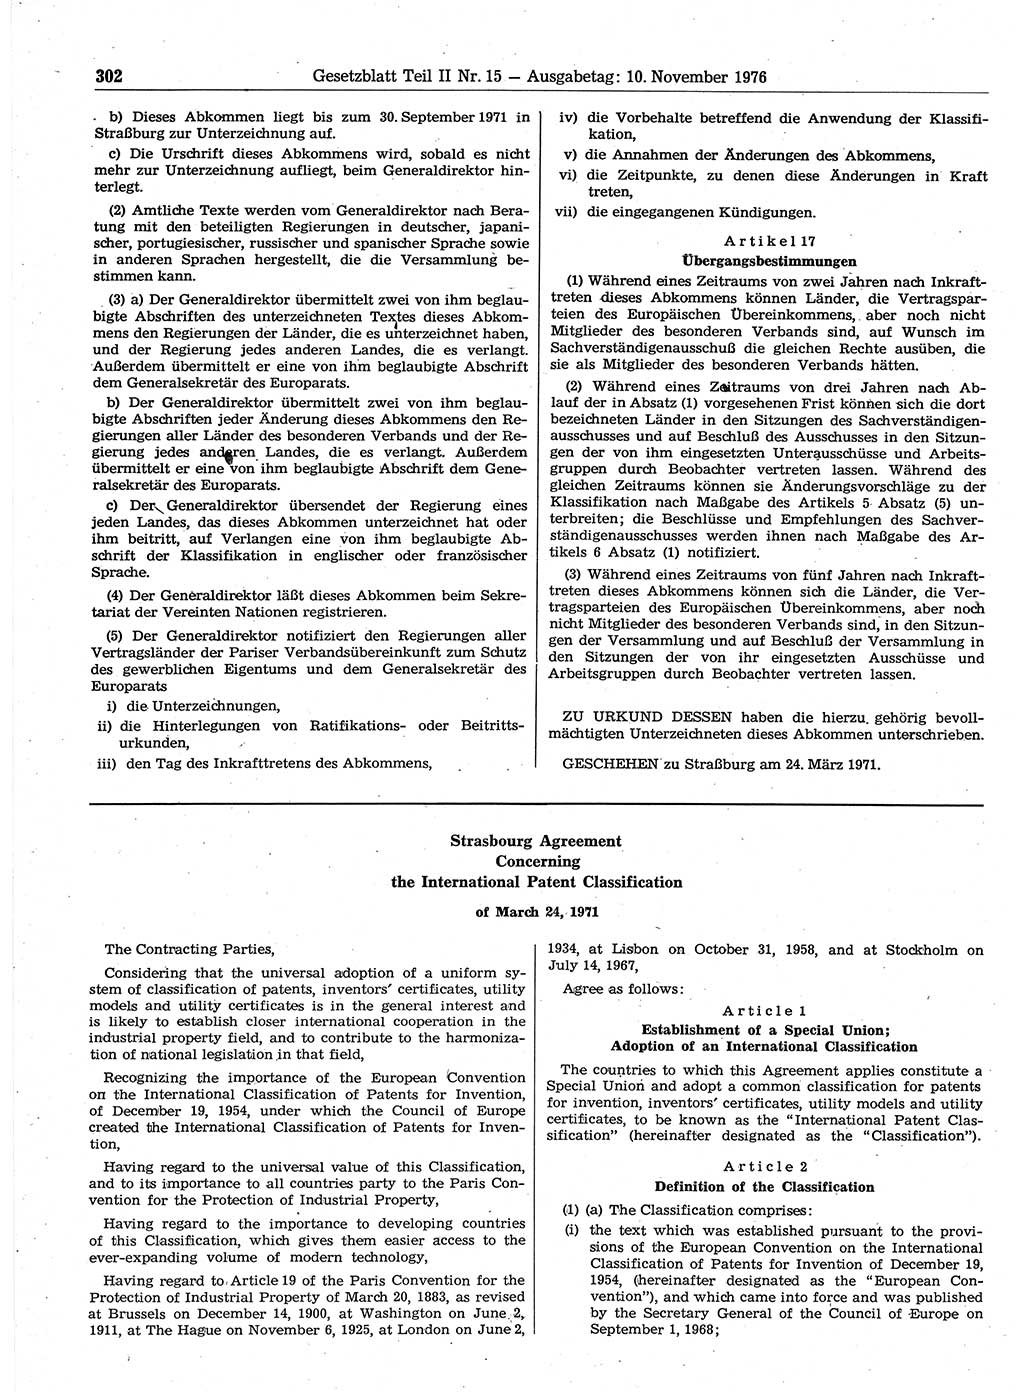 Gesetzblatt (GBl.) der Deutschen Demokratischen Republik (DDR) Teil ⅠⅠ 1976, Seite 302 (GBl. DDR ⅠⅠ 1976, S. 302)